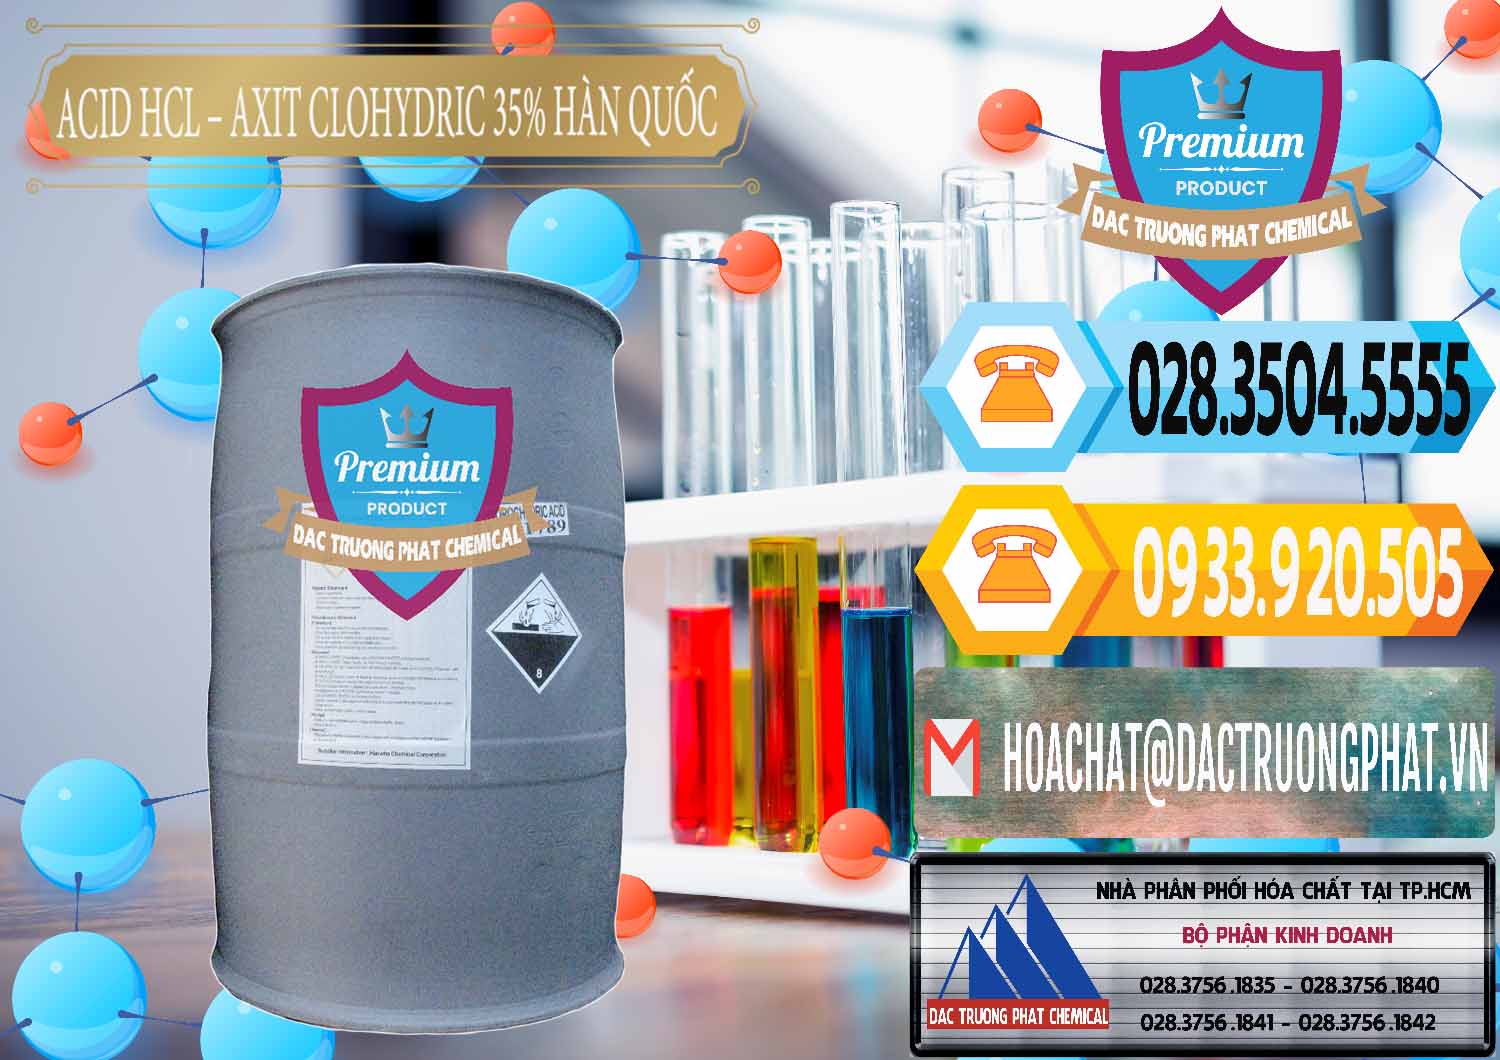 Đơn vị chuyên kinh doanh & bán Acid HCL - Axit Cohidric 35% Hàn Quốc Korea - 0011 - Đơn vị chuyên cung cấp & kinh doanh hóa chất tại TP.HCM - hoachattayrua.net